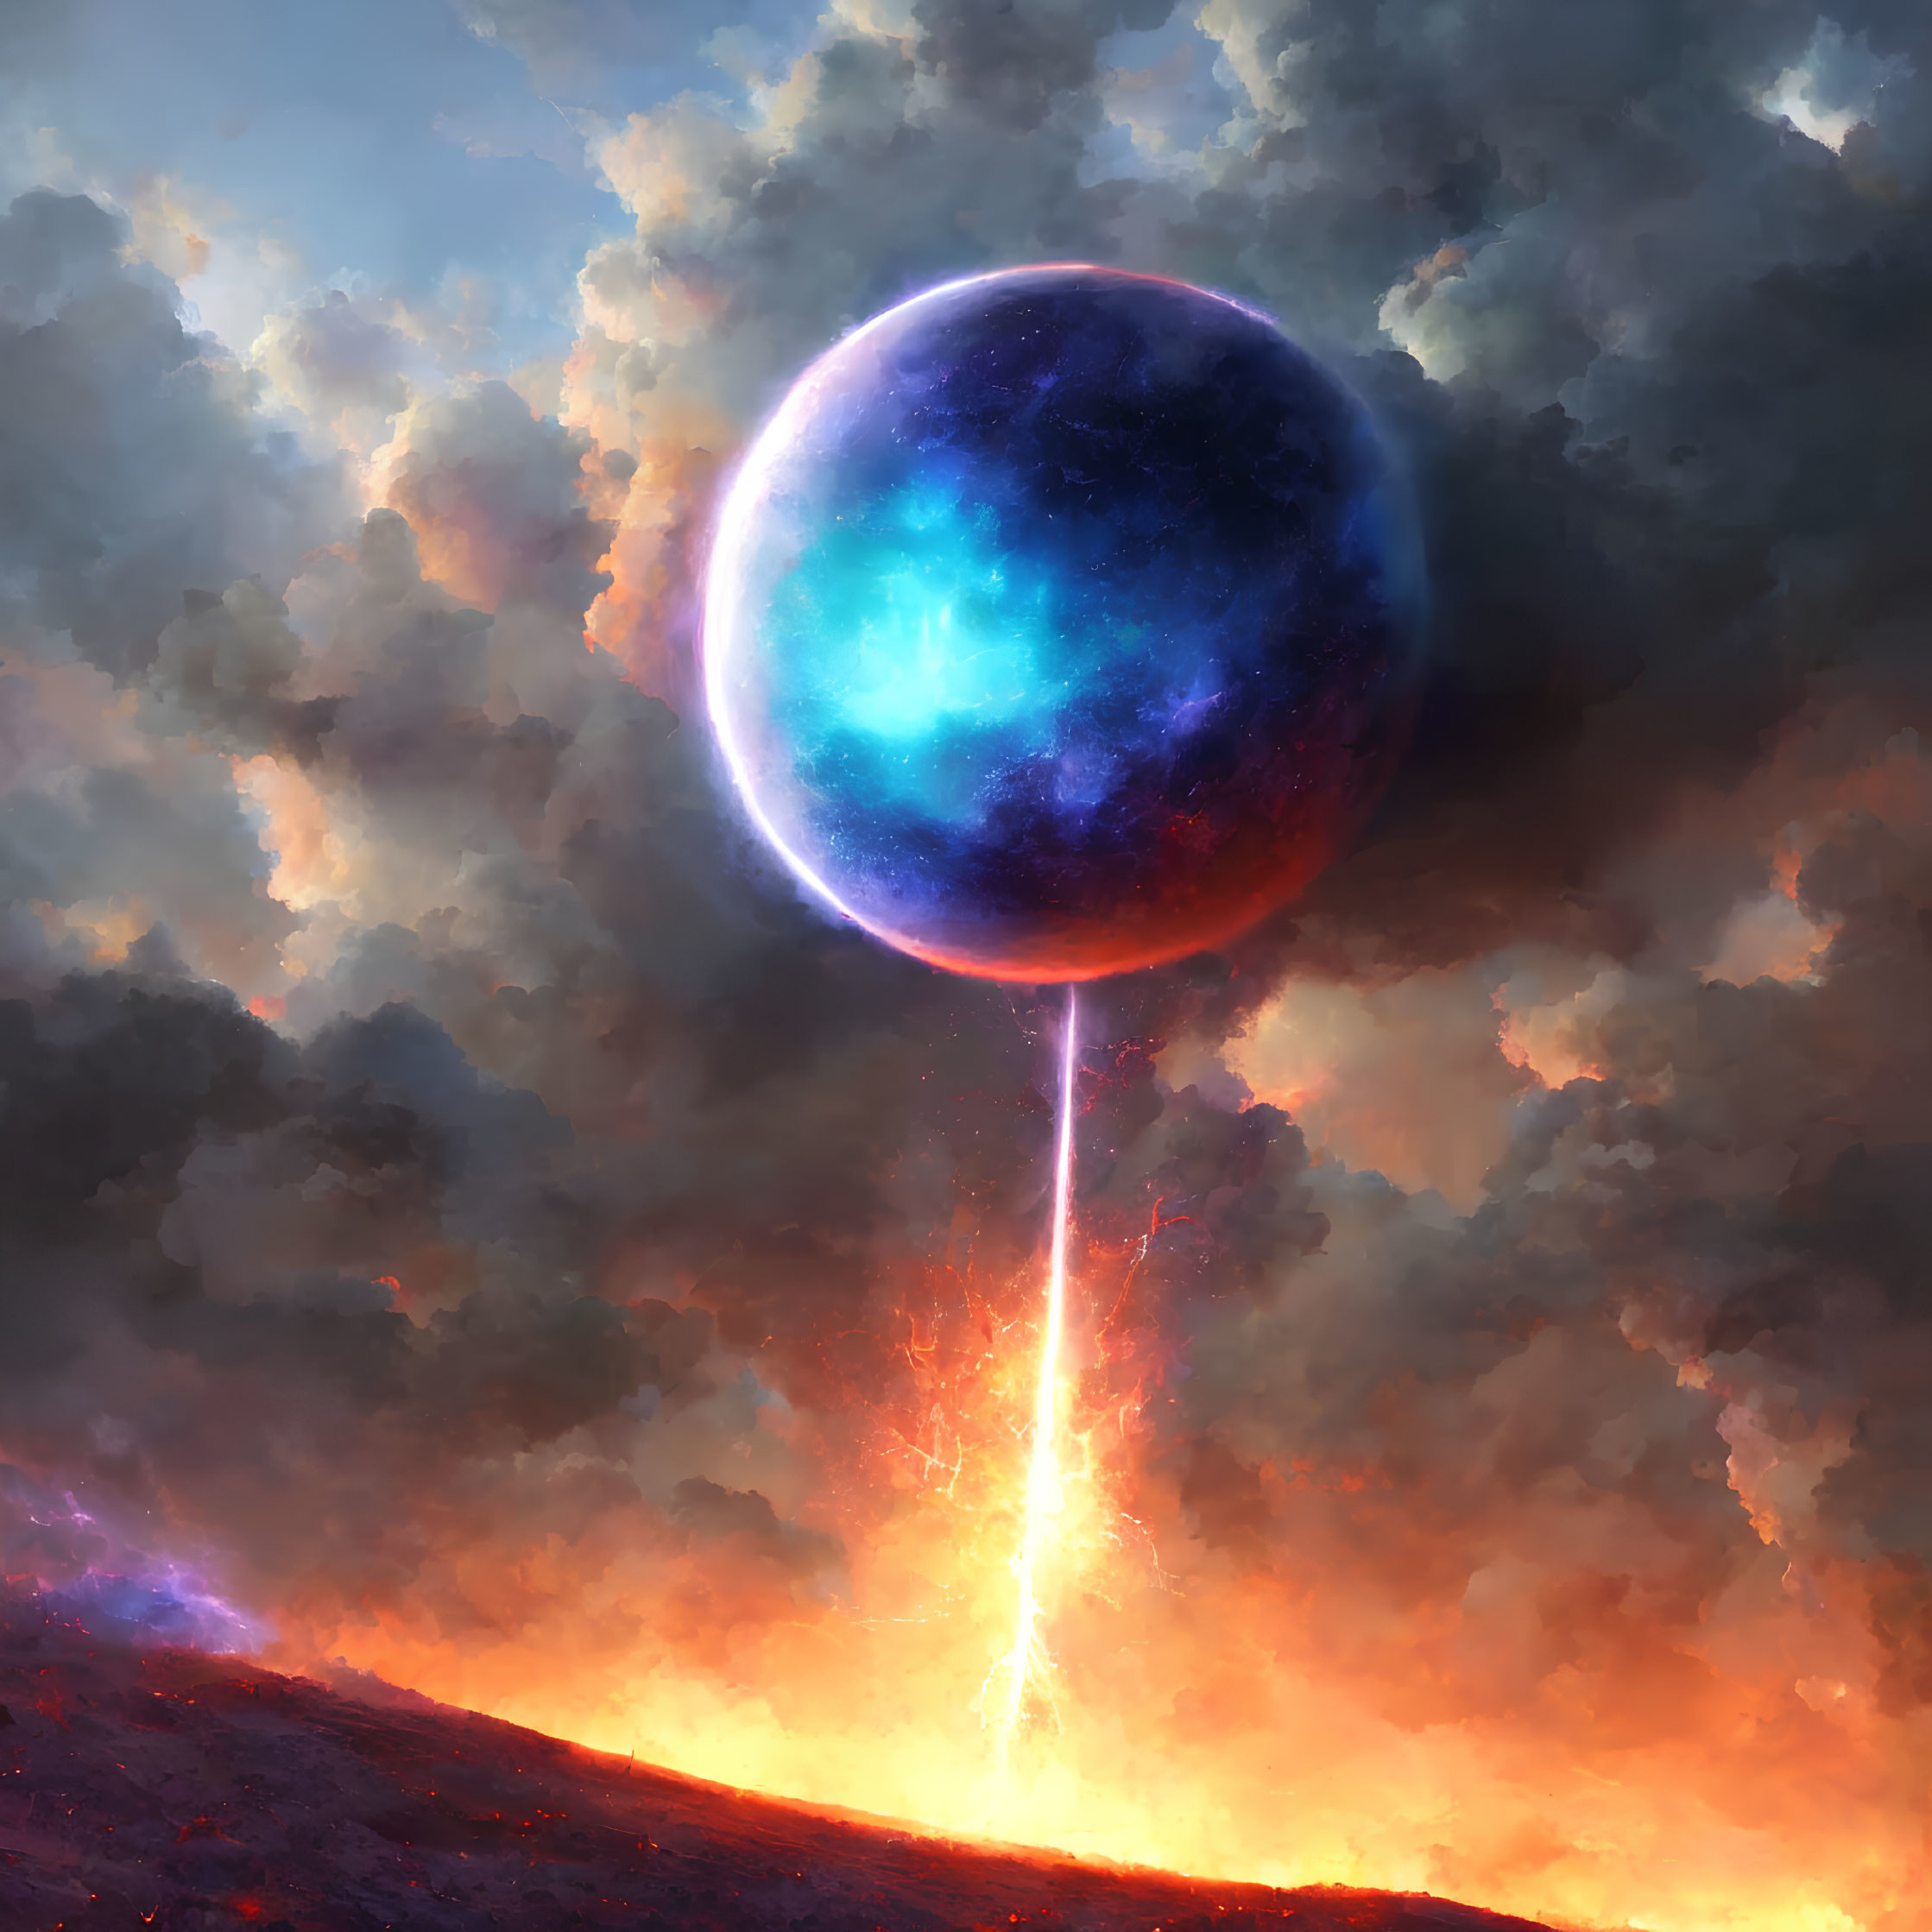 Digital artwork of celestial orb above volcanic landscape